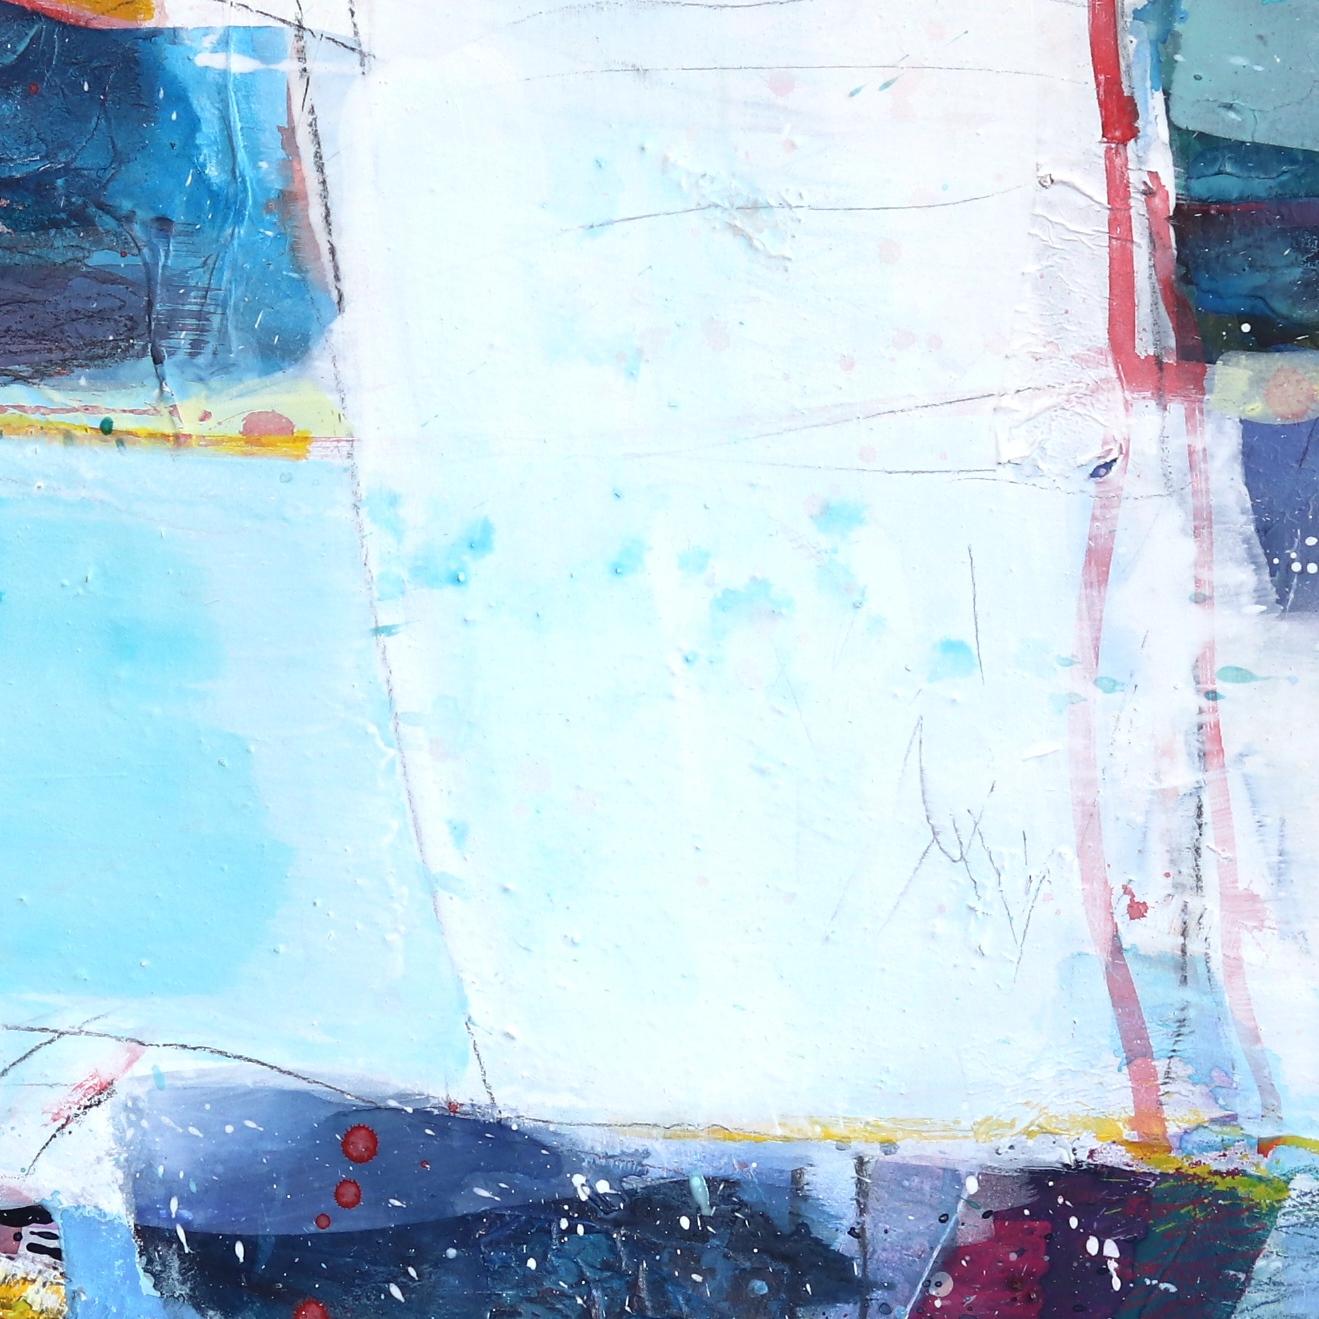 Die belgische Künstlerin Greet Helsen kombiniert in ihren großformatigen abstrakten Gemälden meisterhaft Acrylfarbe mit der sprudelnden Transparenz von Aquarellfarben. Helsens schimmernde Pastellflächen, die an den abstrakten Expressionismus und die